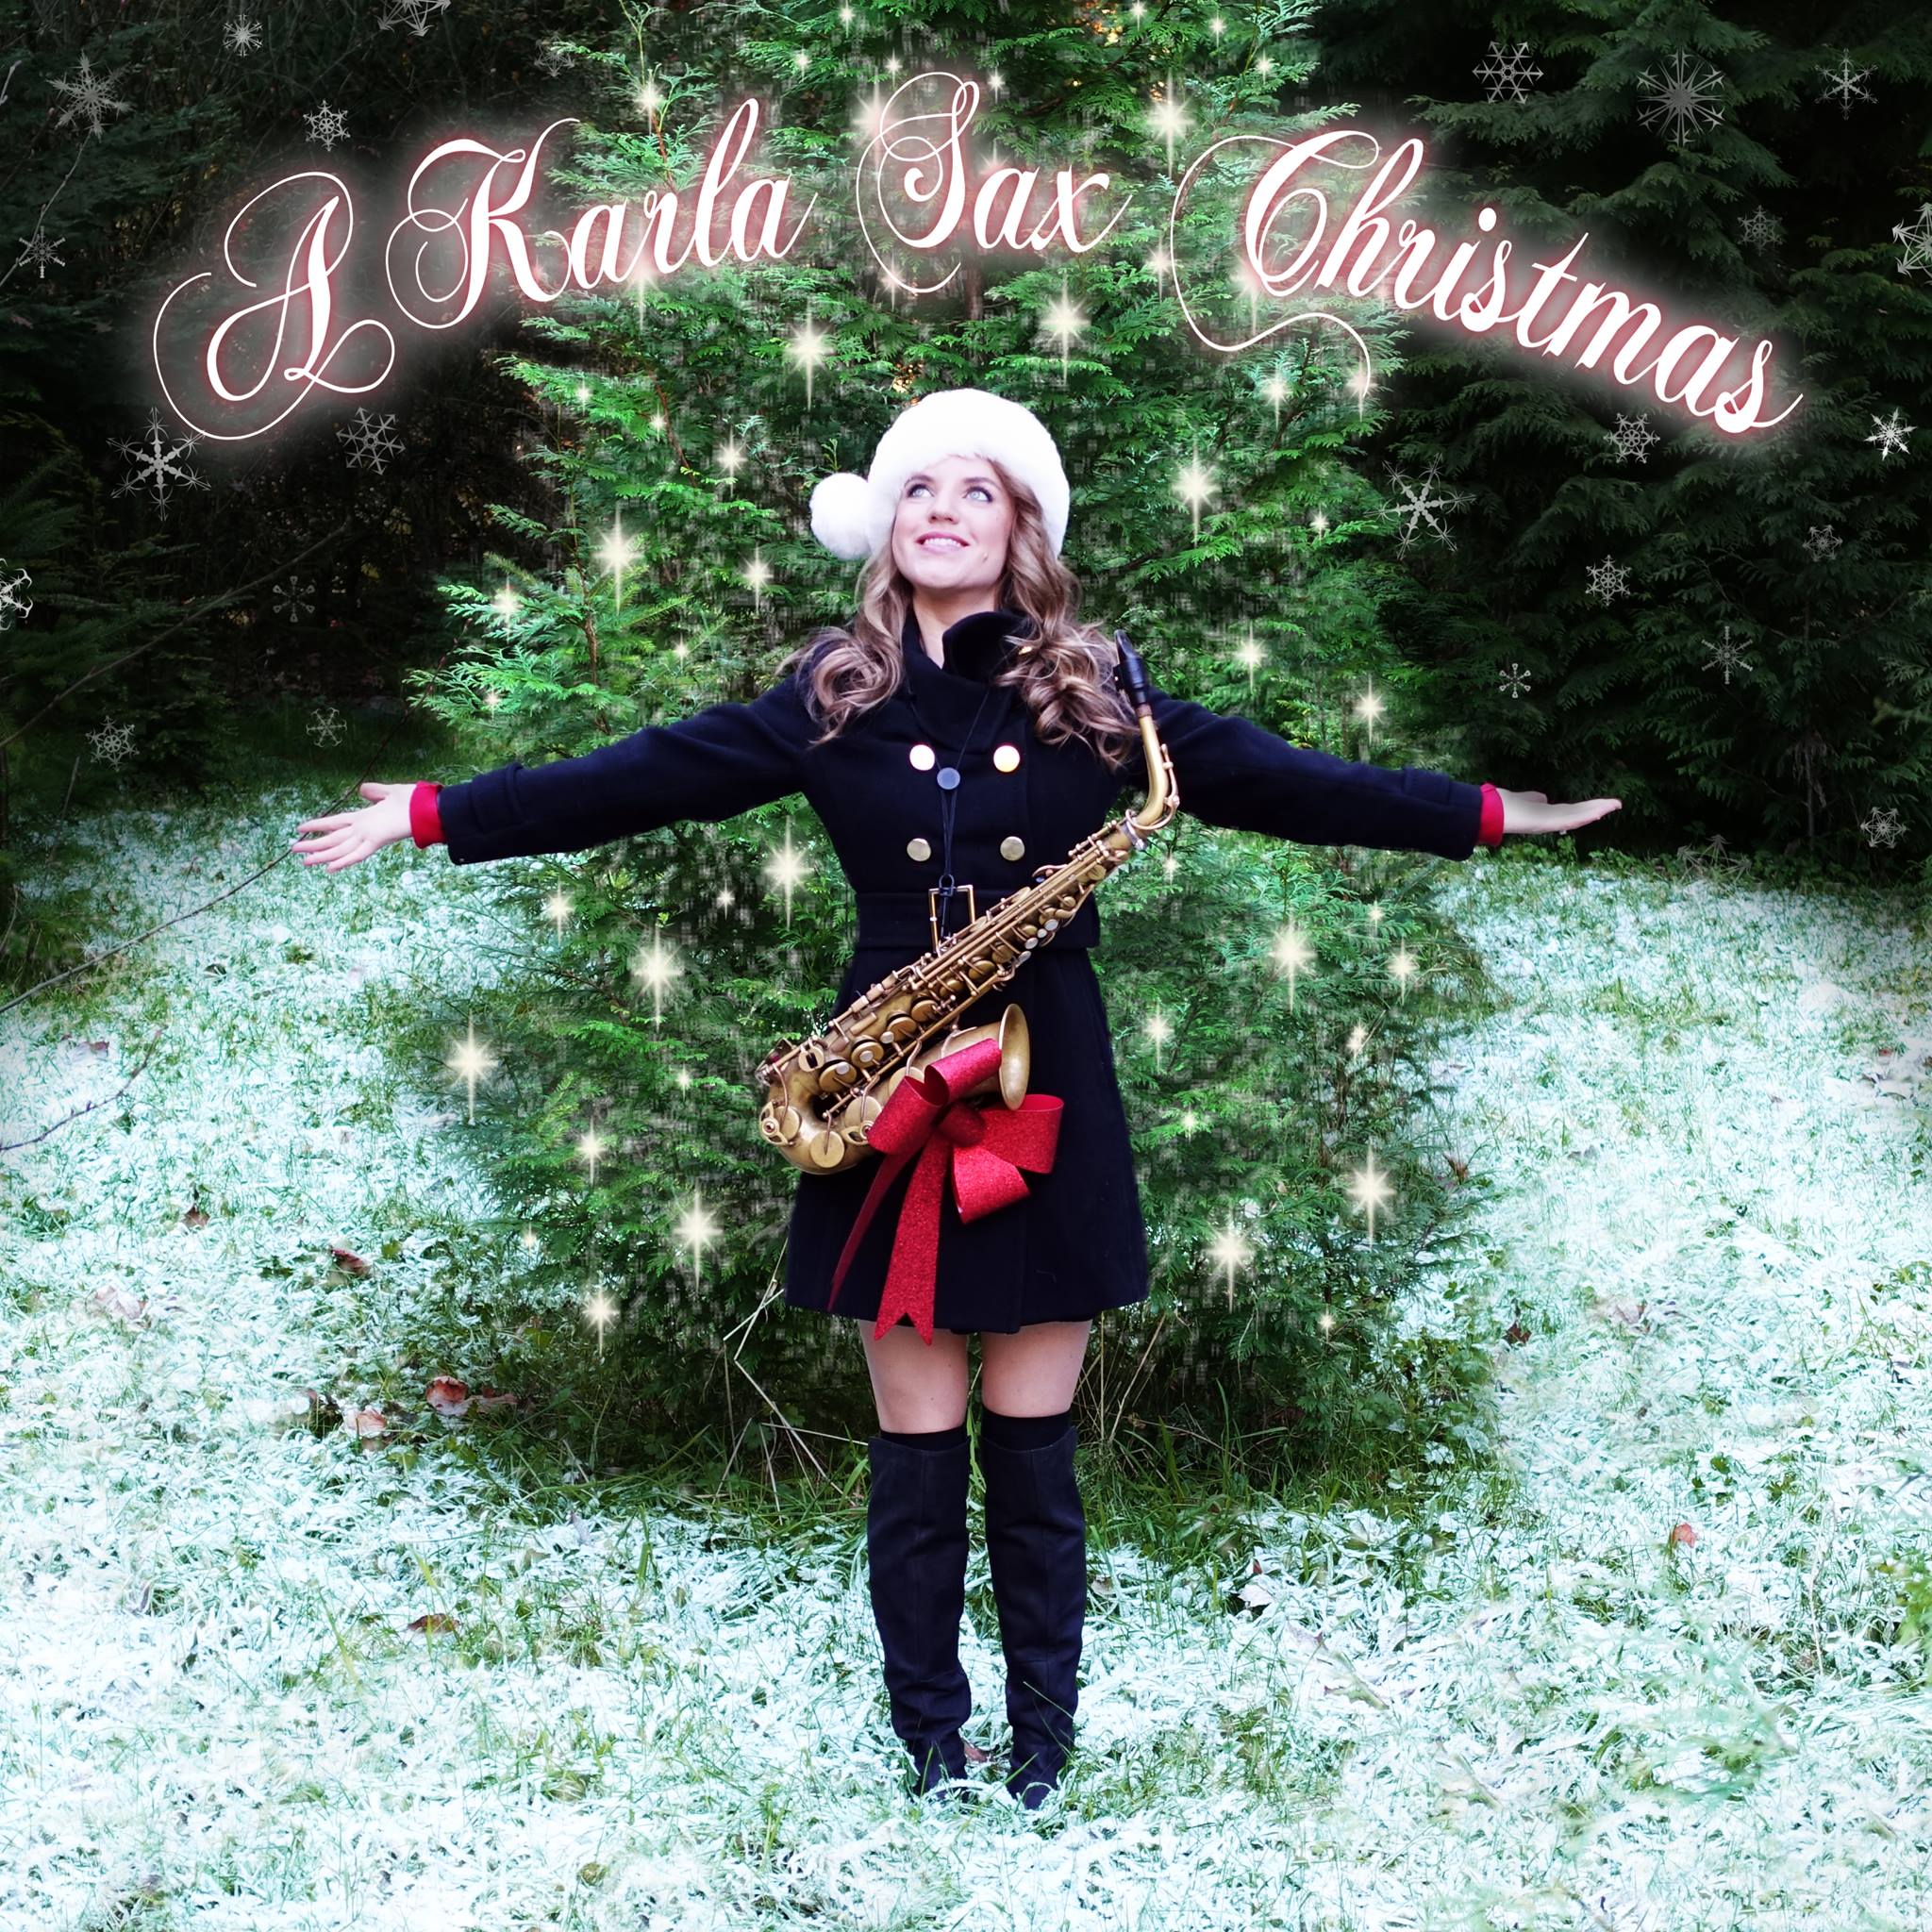 Karla sax Vancouver Christmas Music